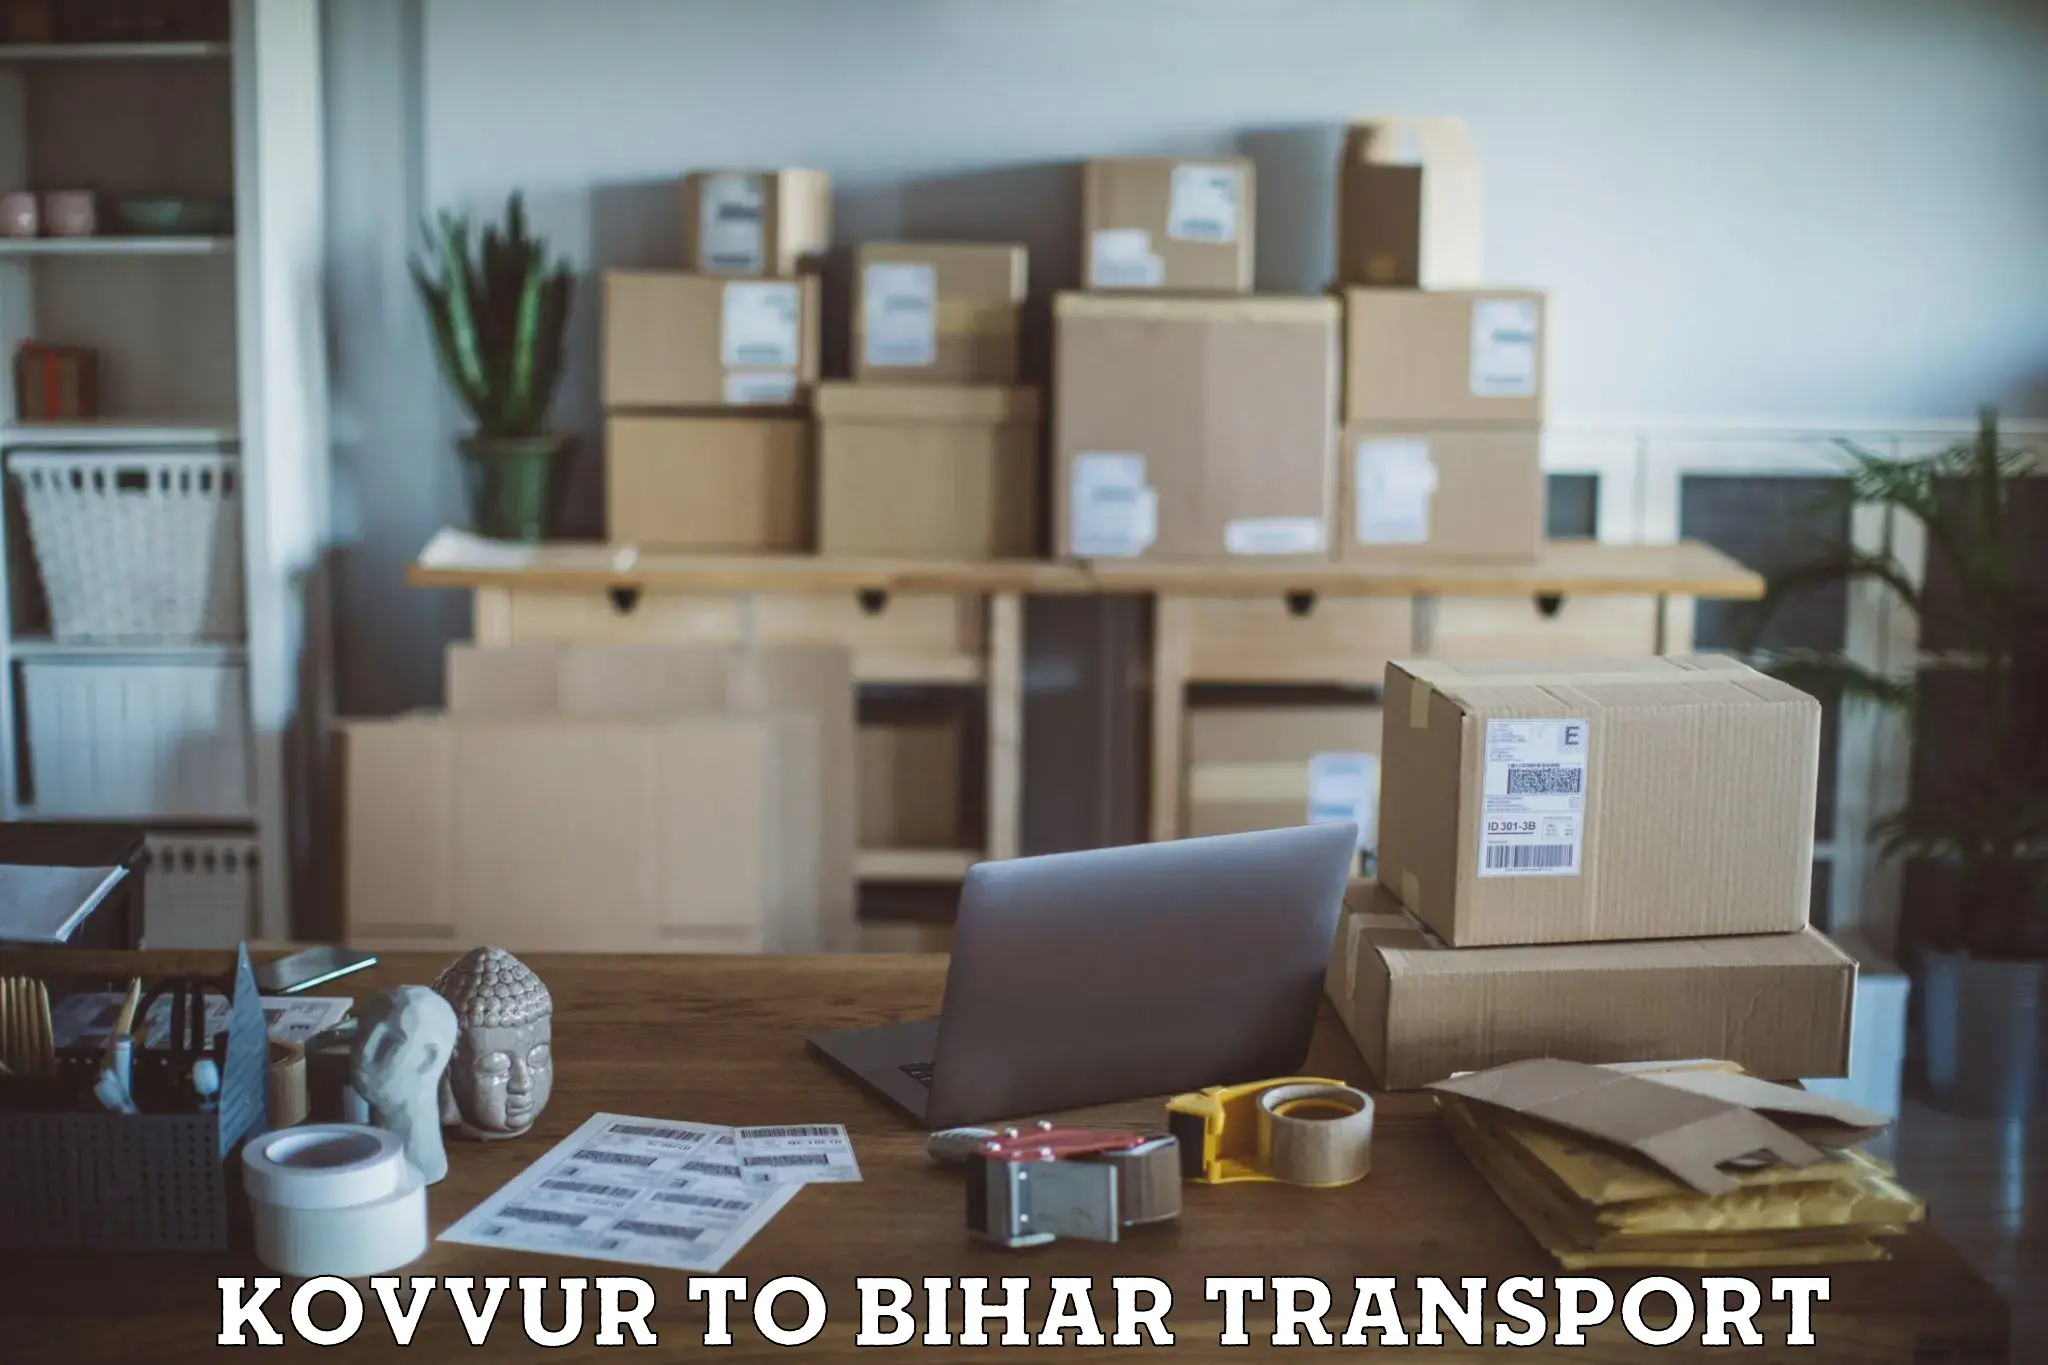 Container transportation services Kovvur to Arrah